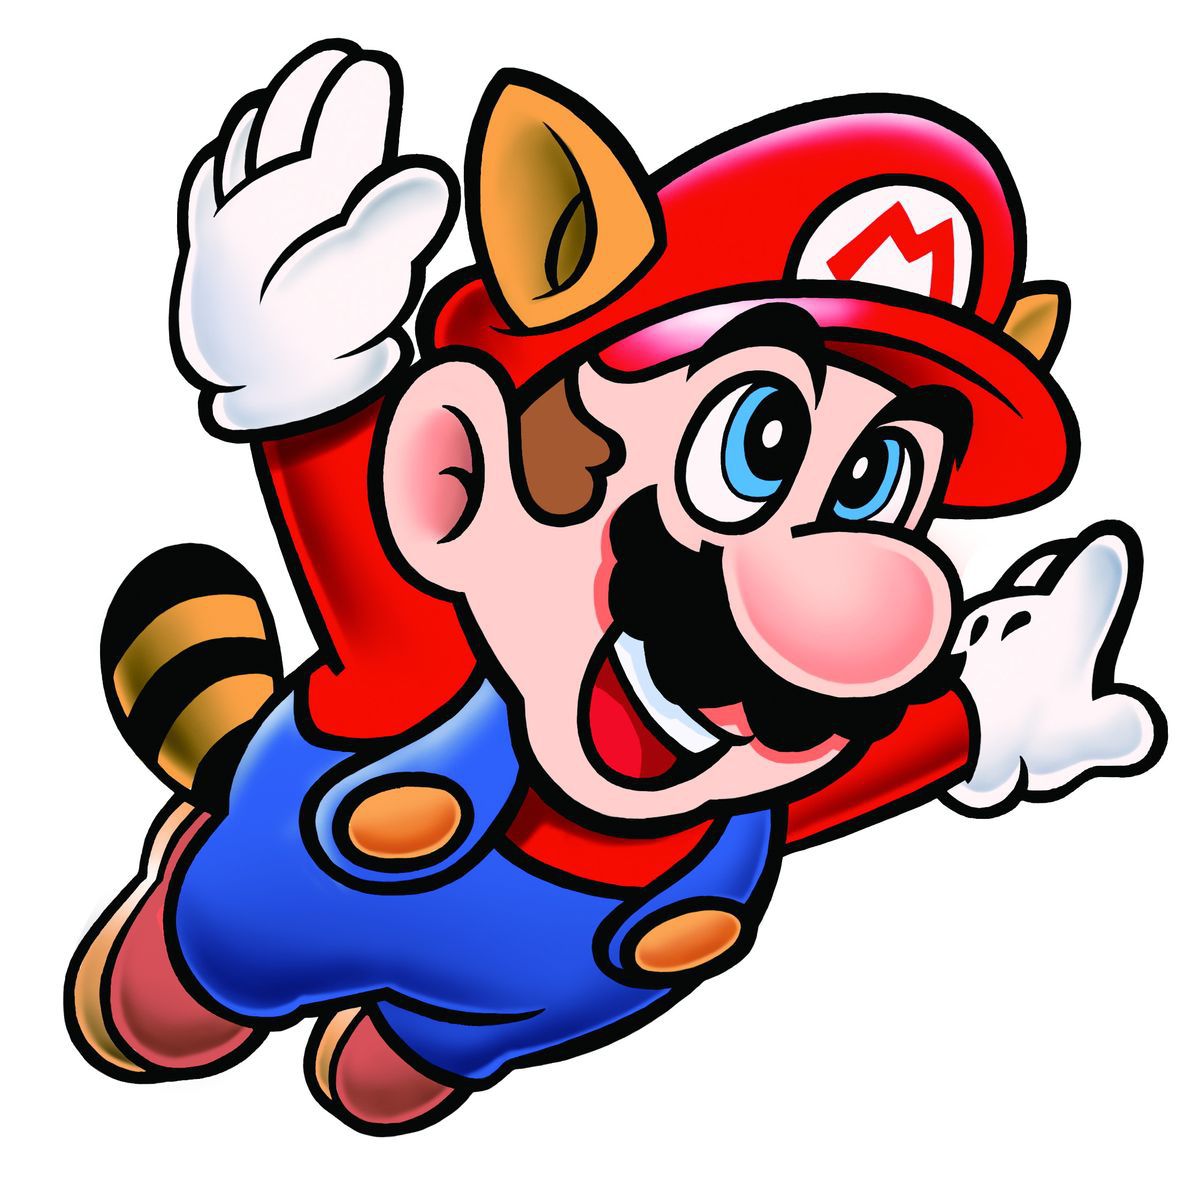 Super Mario Bros 3 - artwork